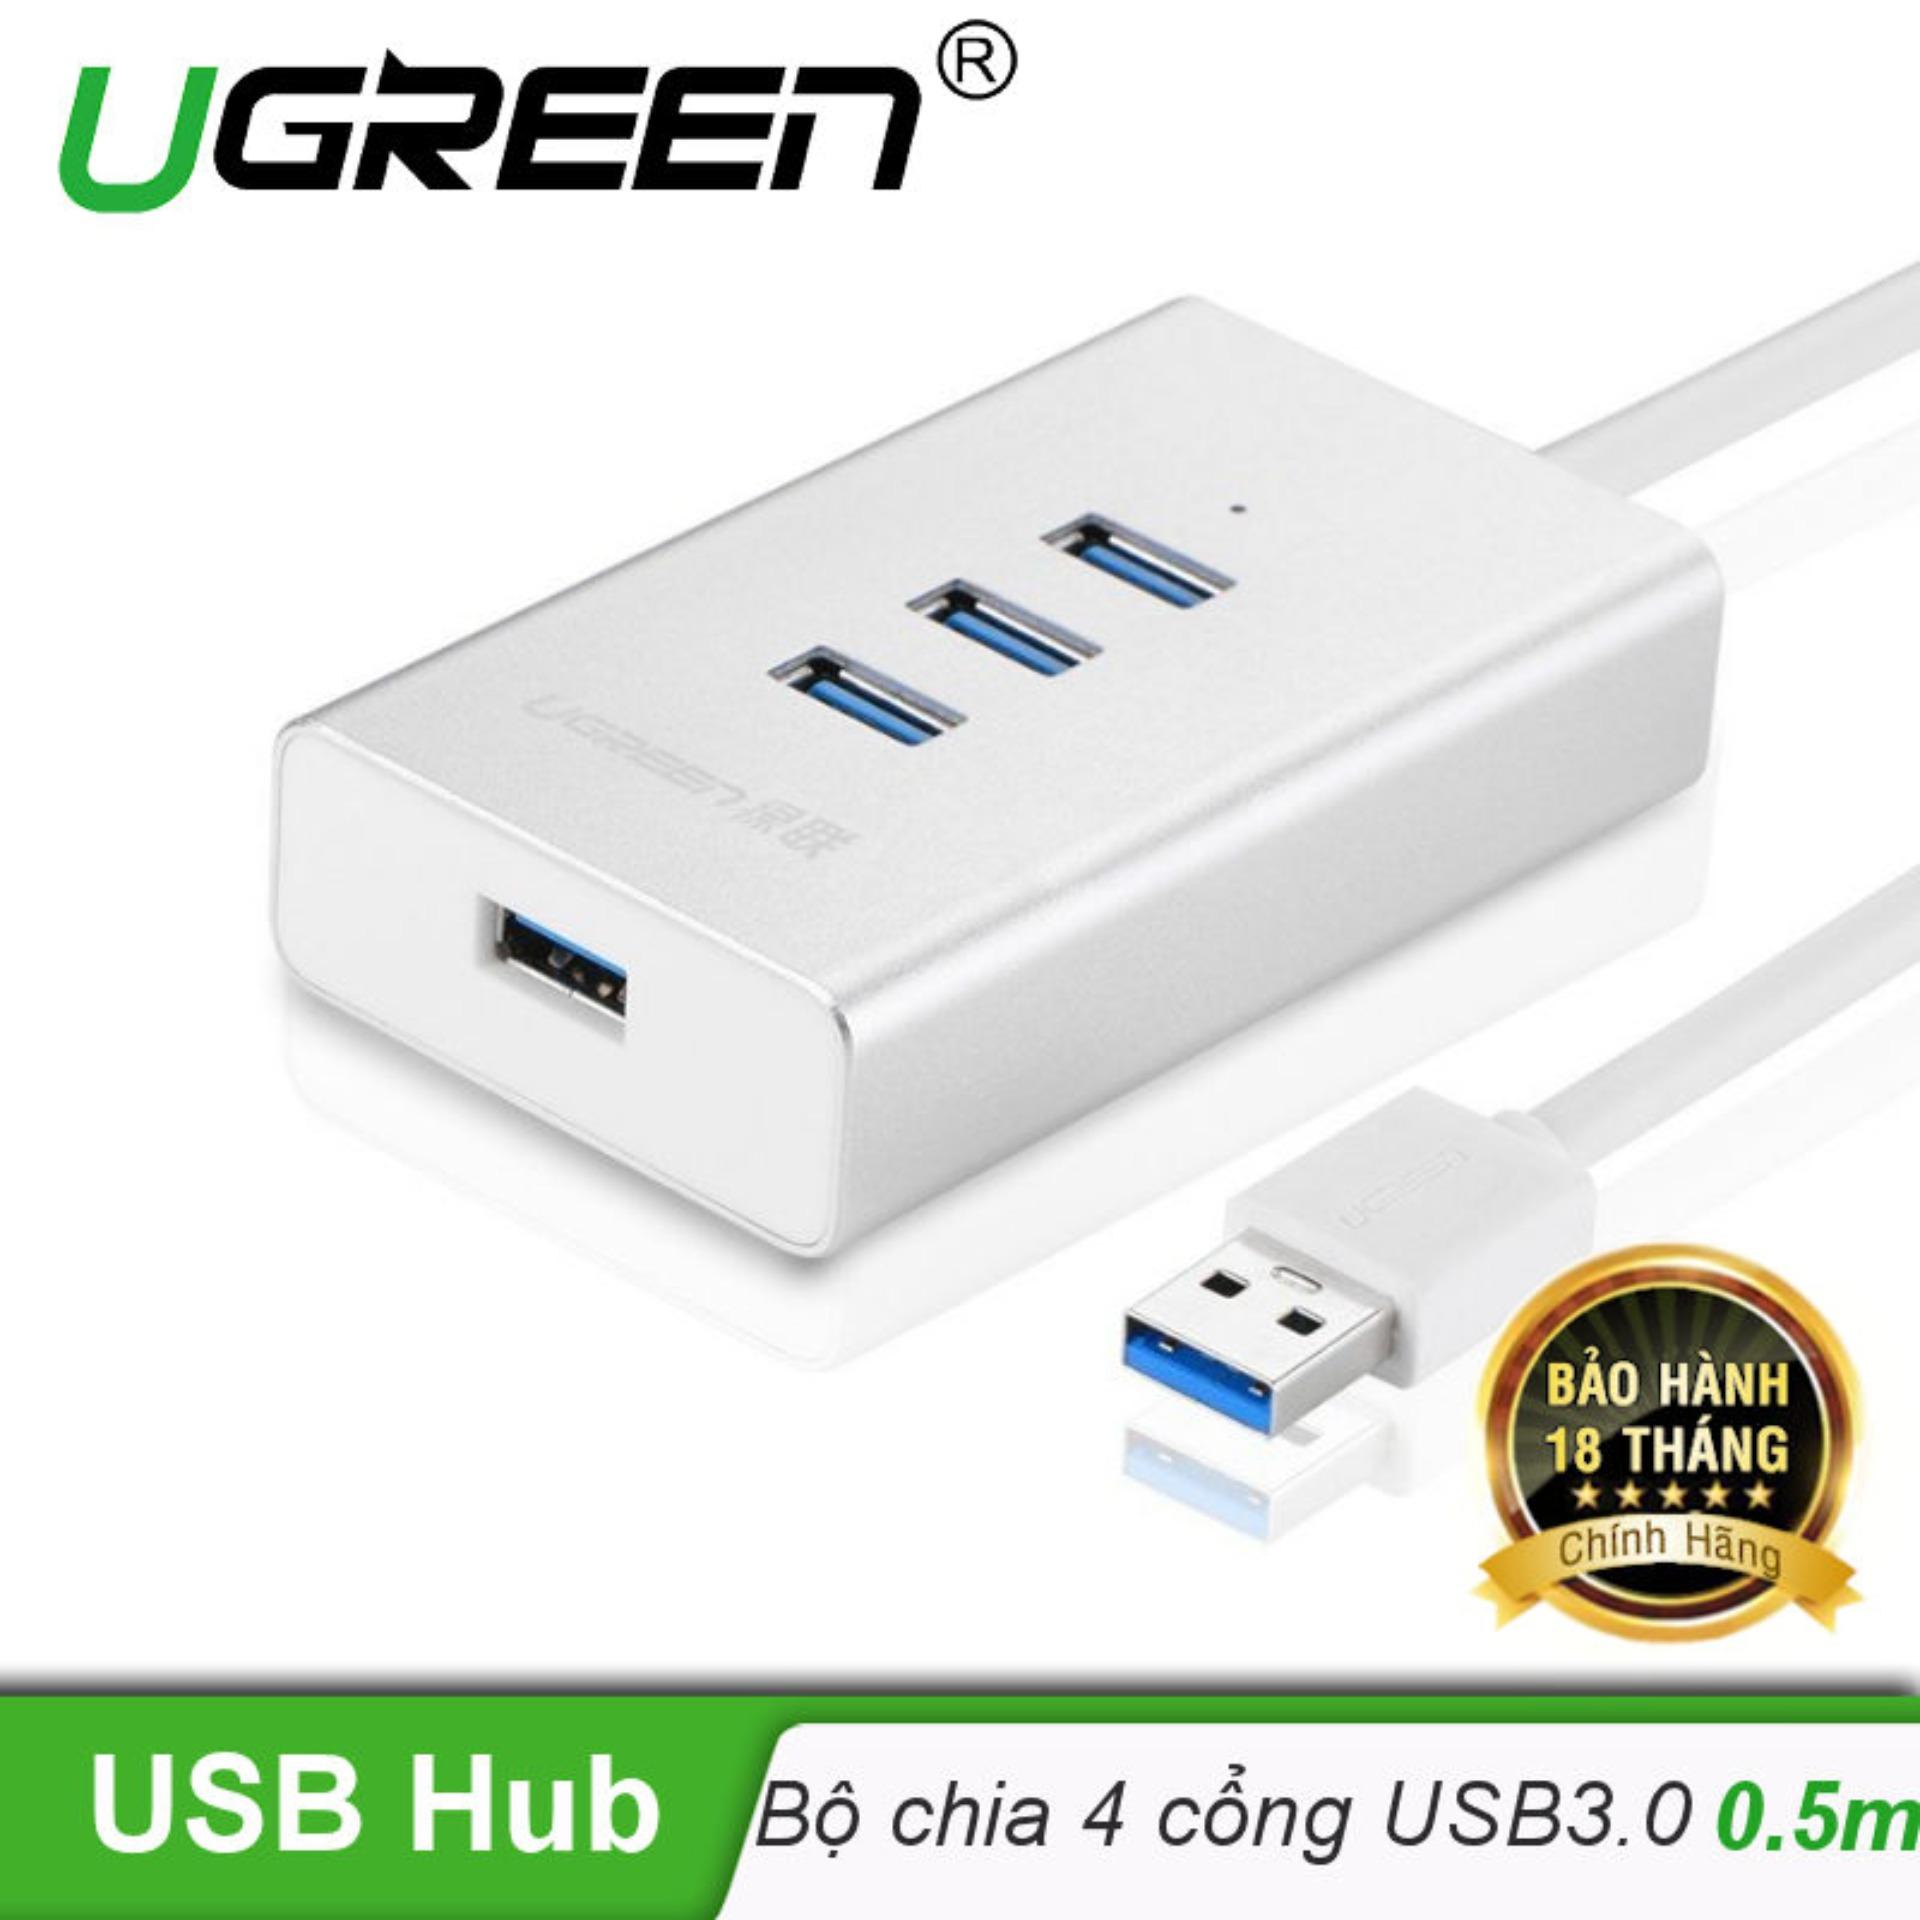 Bộ chia USB 3.0 sang 4 cổng USB 3.0 vỏ hợp kim nhôm dài 0.5M chính hãng UGREEN CR126 30234...